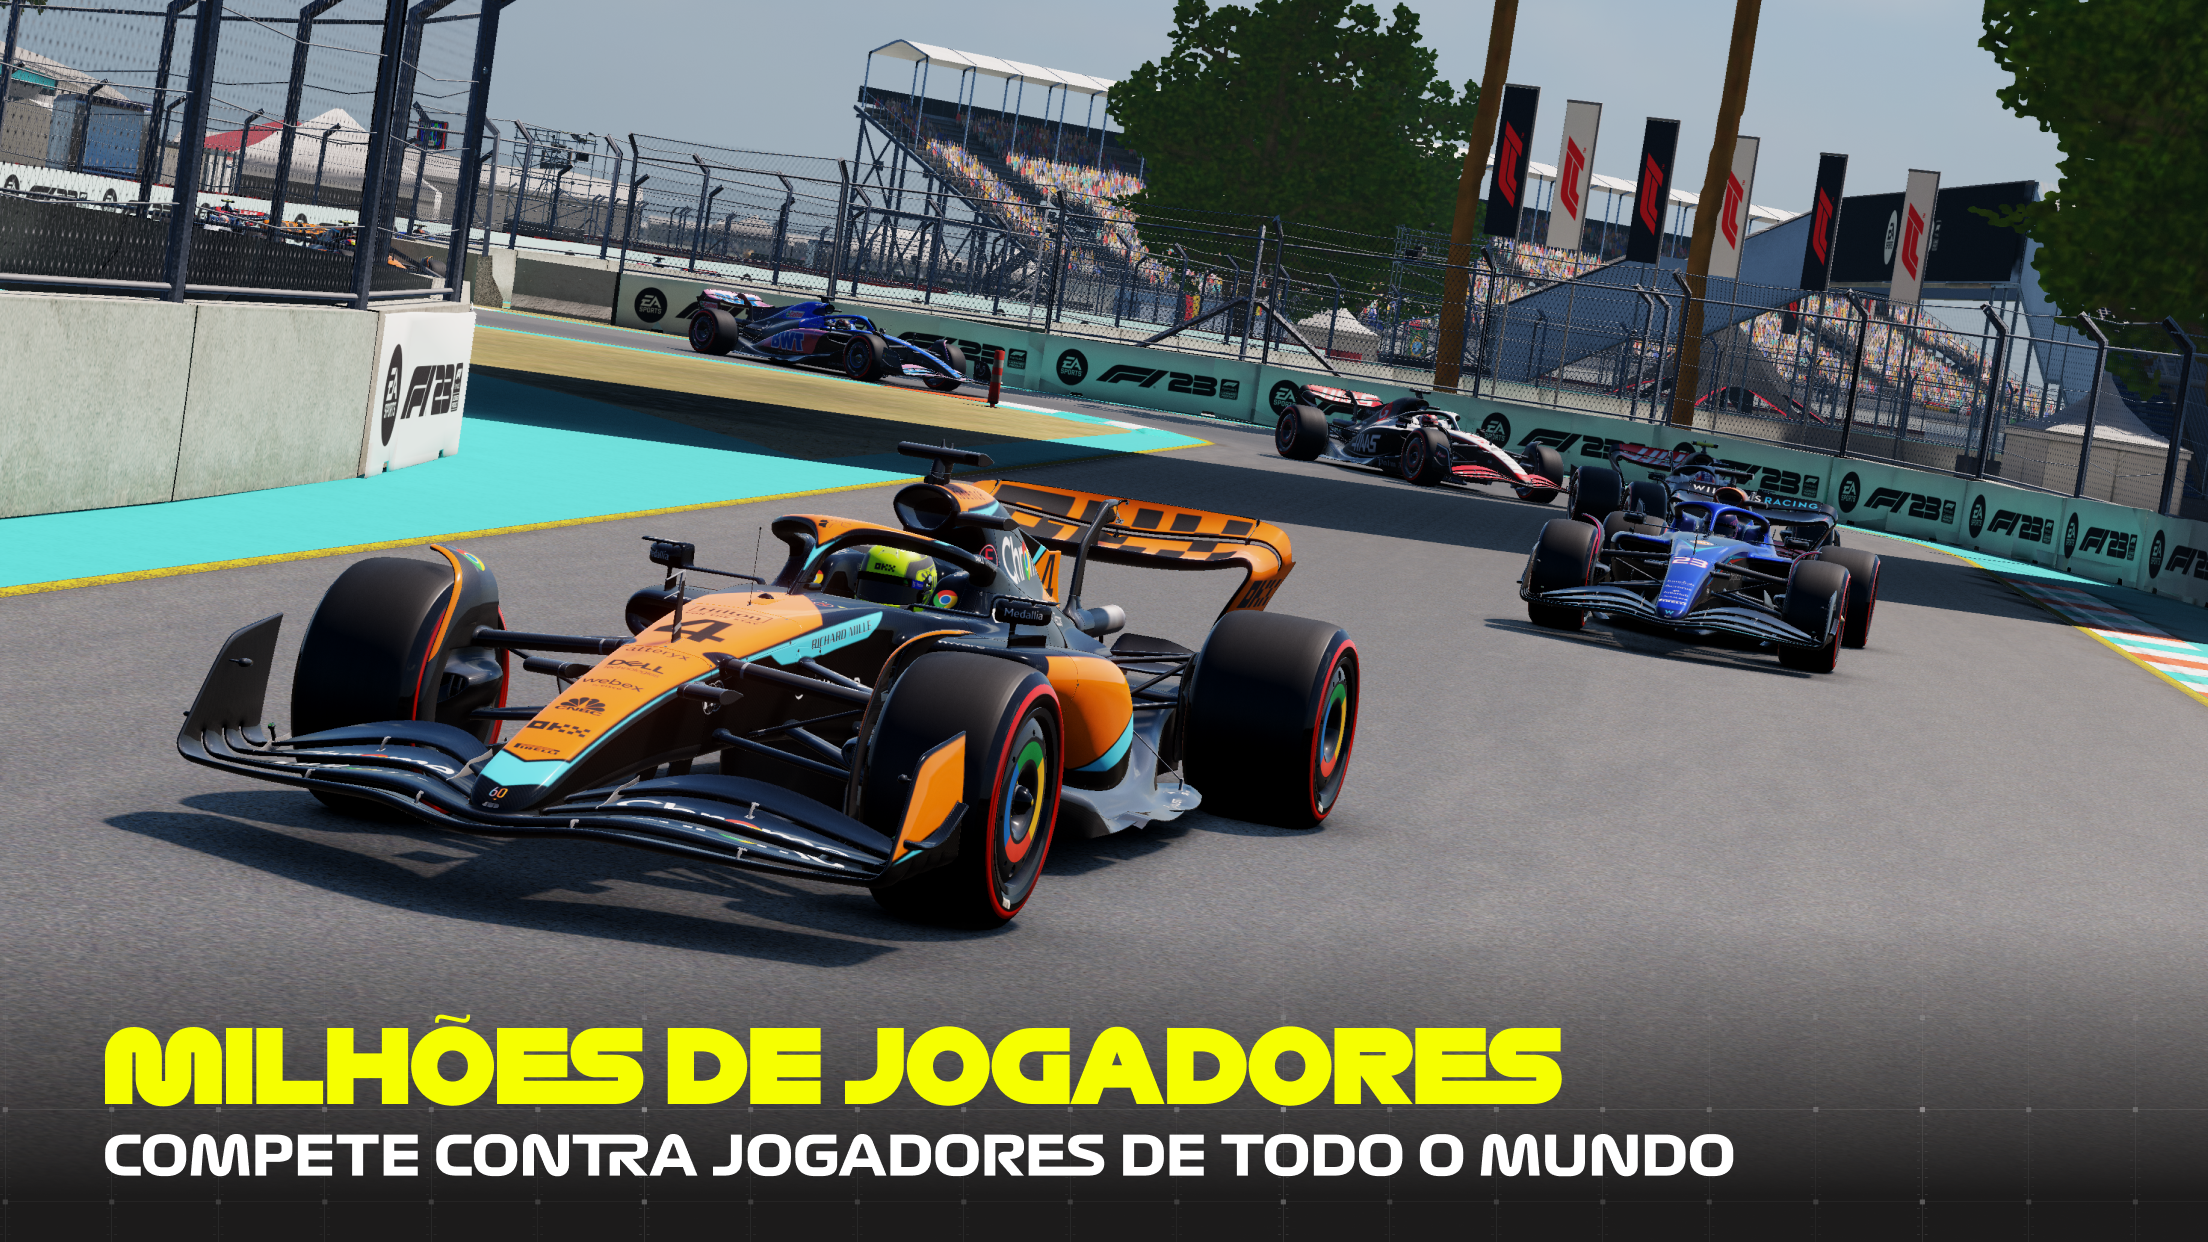 F1 MOBILE RACING - O INÍCIO - É UM F1 2018 PARA CELULAR DE  GRAÇA(Português-BR) iPhone 6s plus 